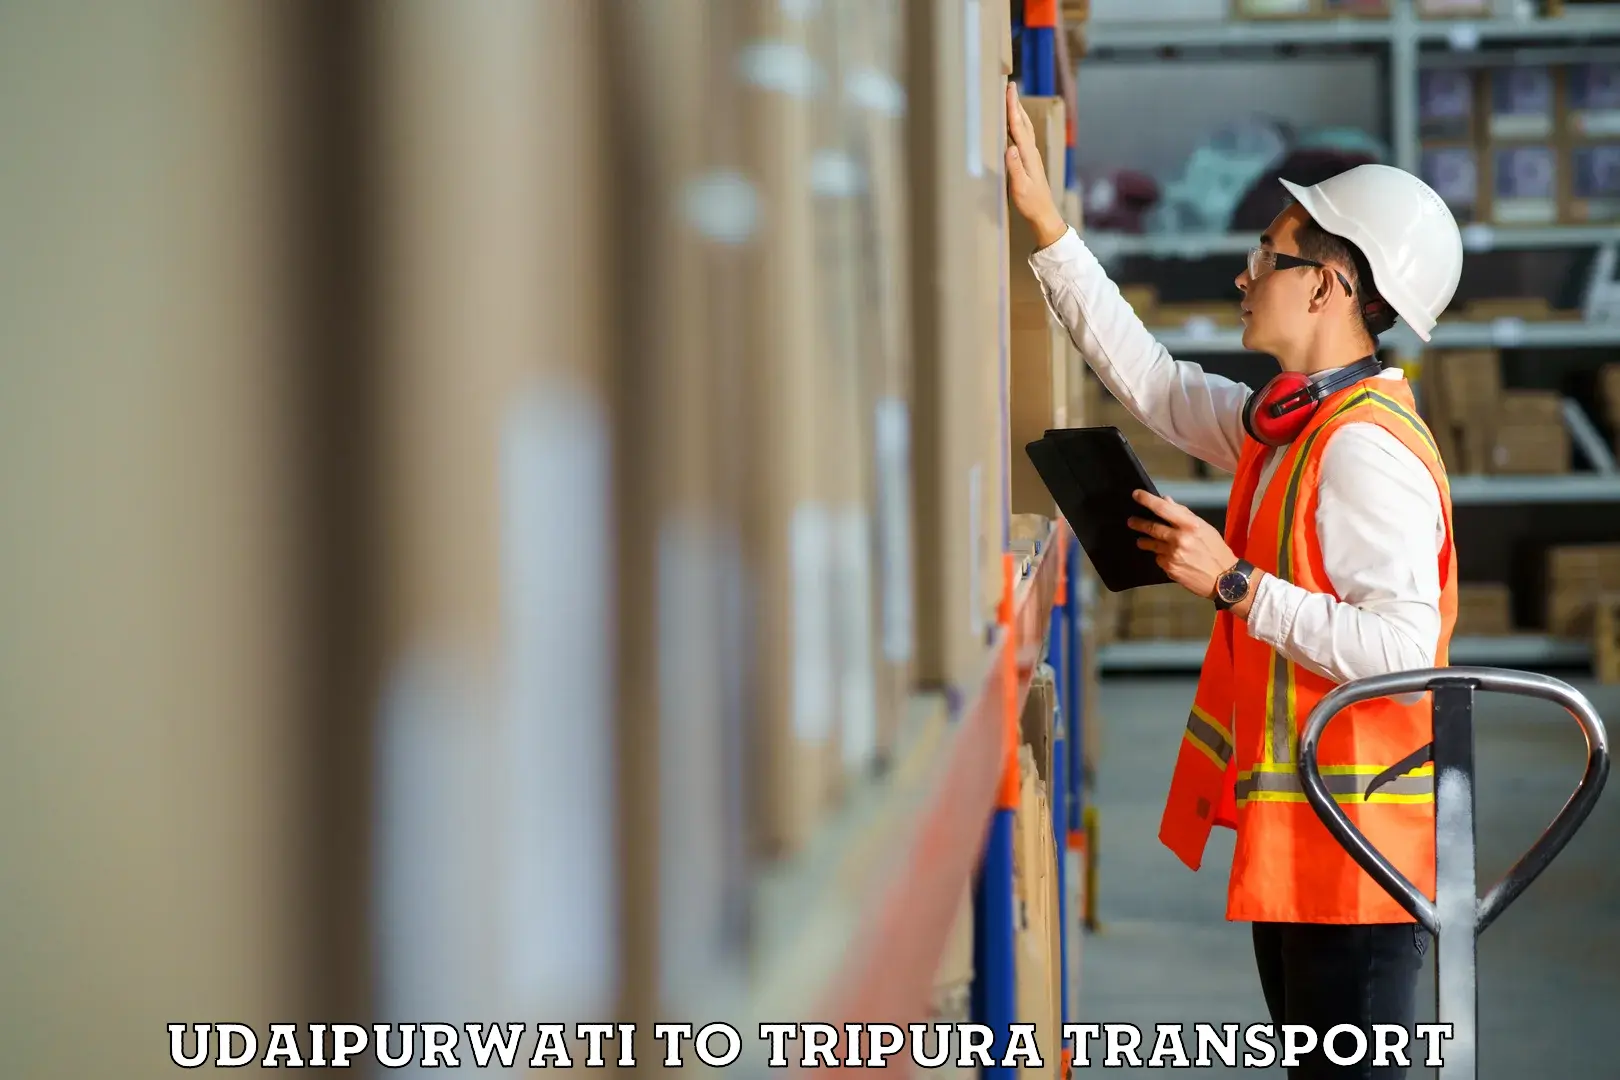 Furniture transport service Udaipurwati to Manu Bazar